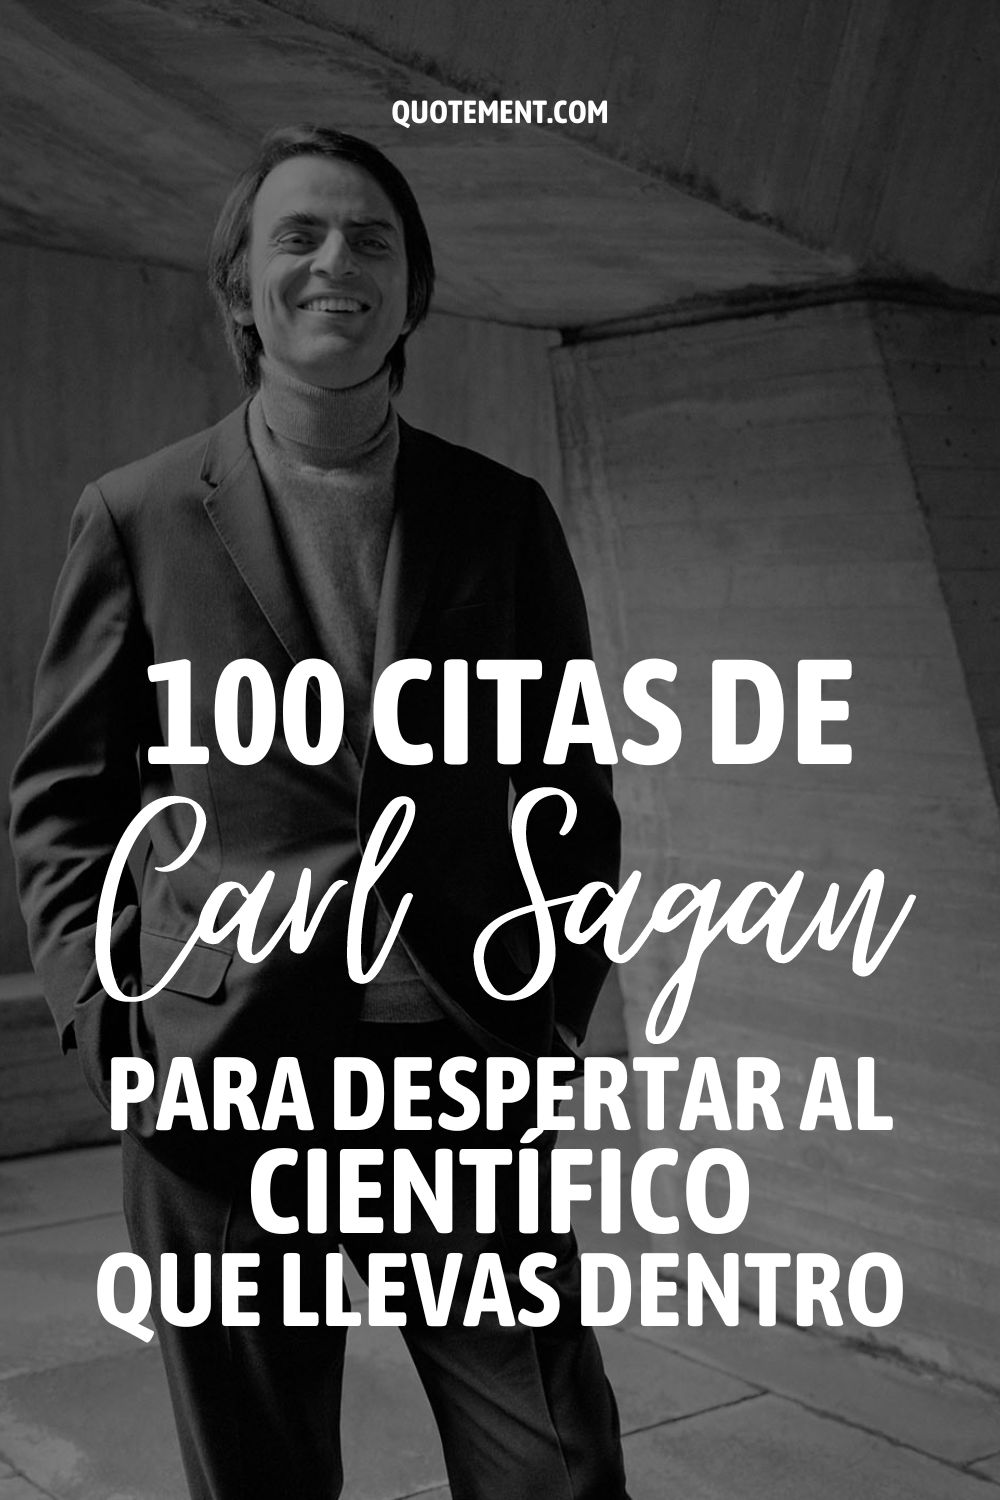 100 citas de Carl Sagan para despertar al científico que llevas dentro